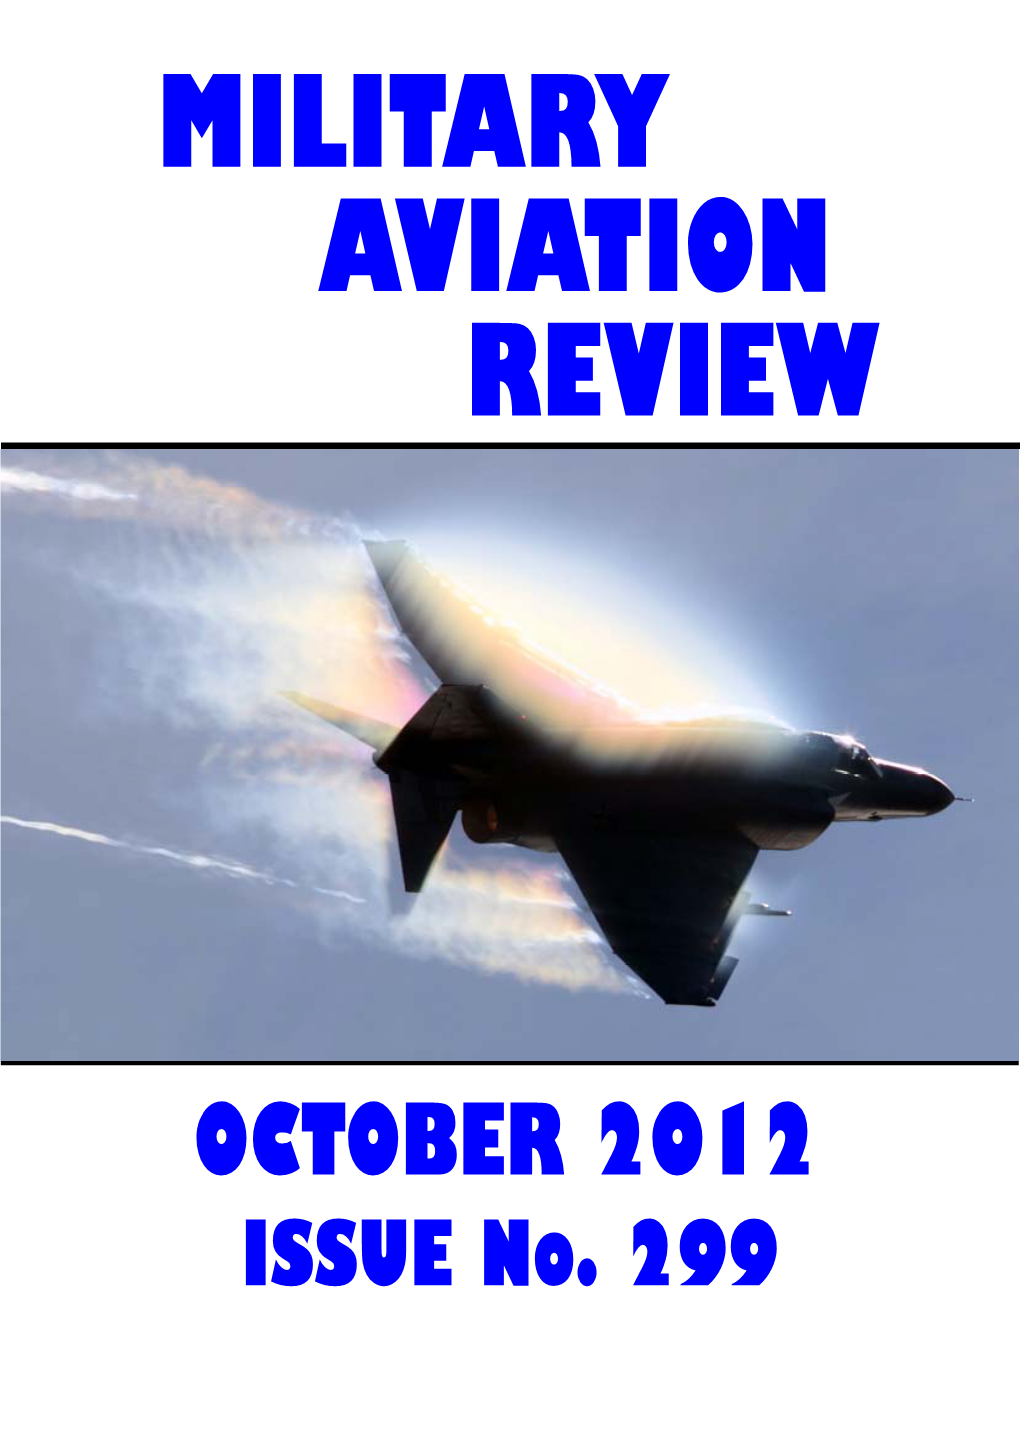 OCTOBER 2012 ISSUE No